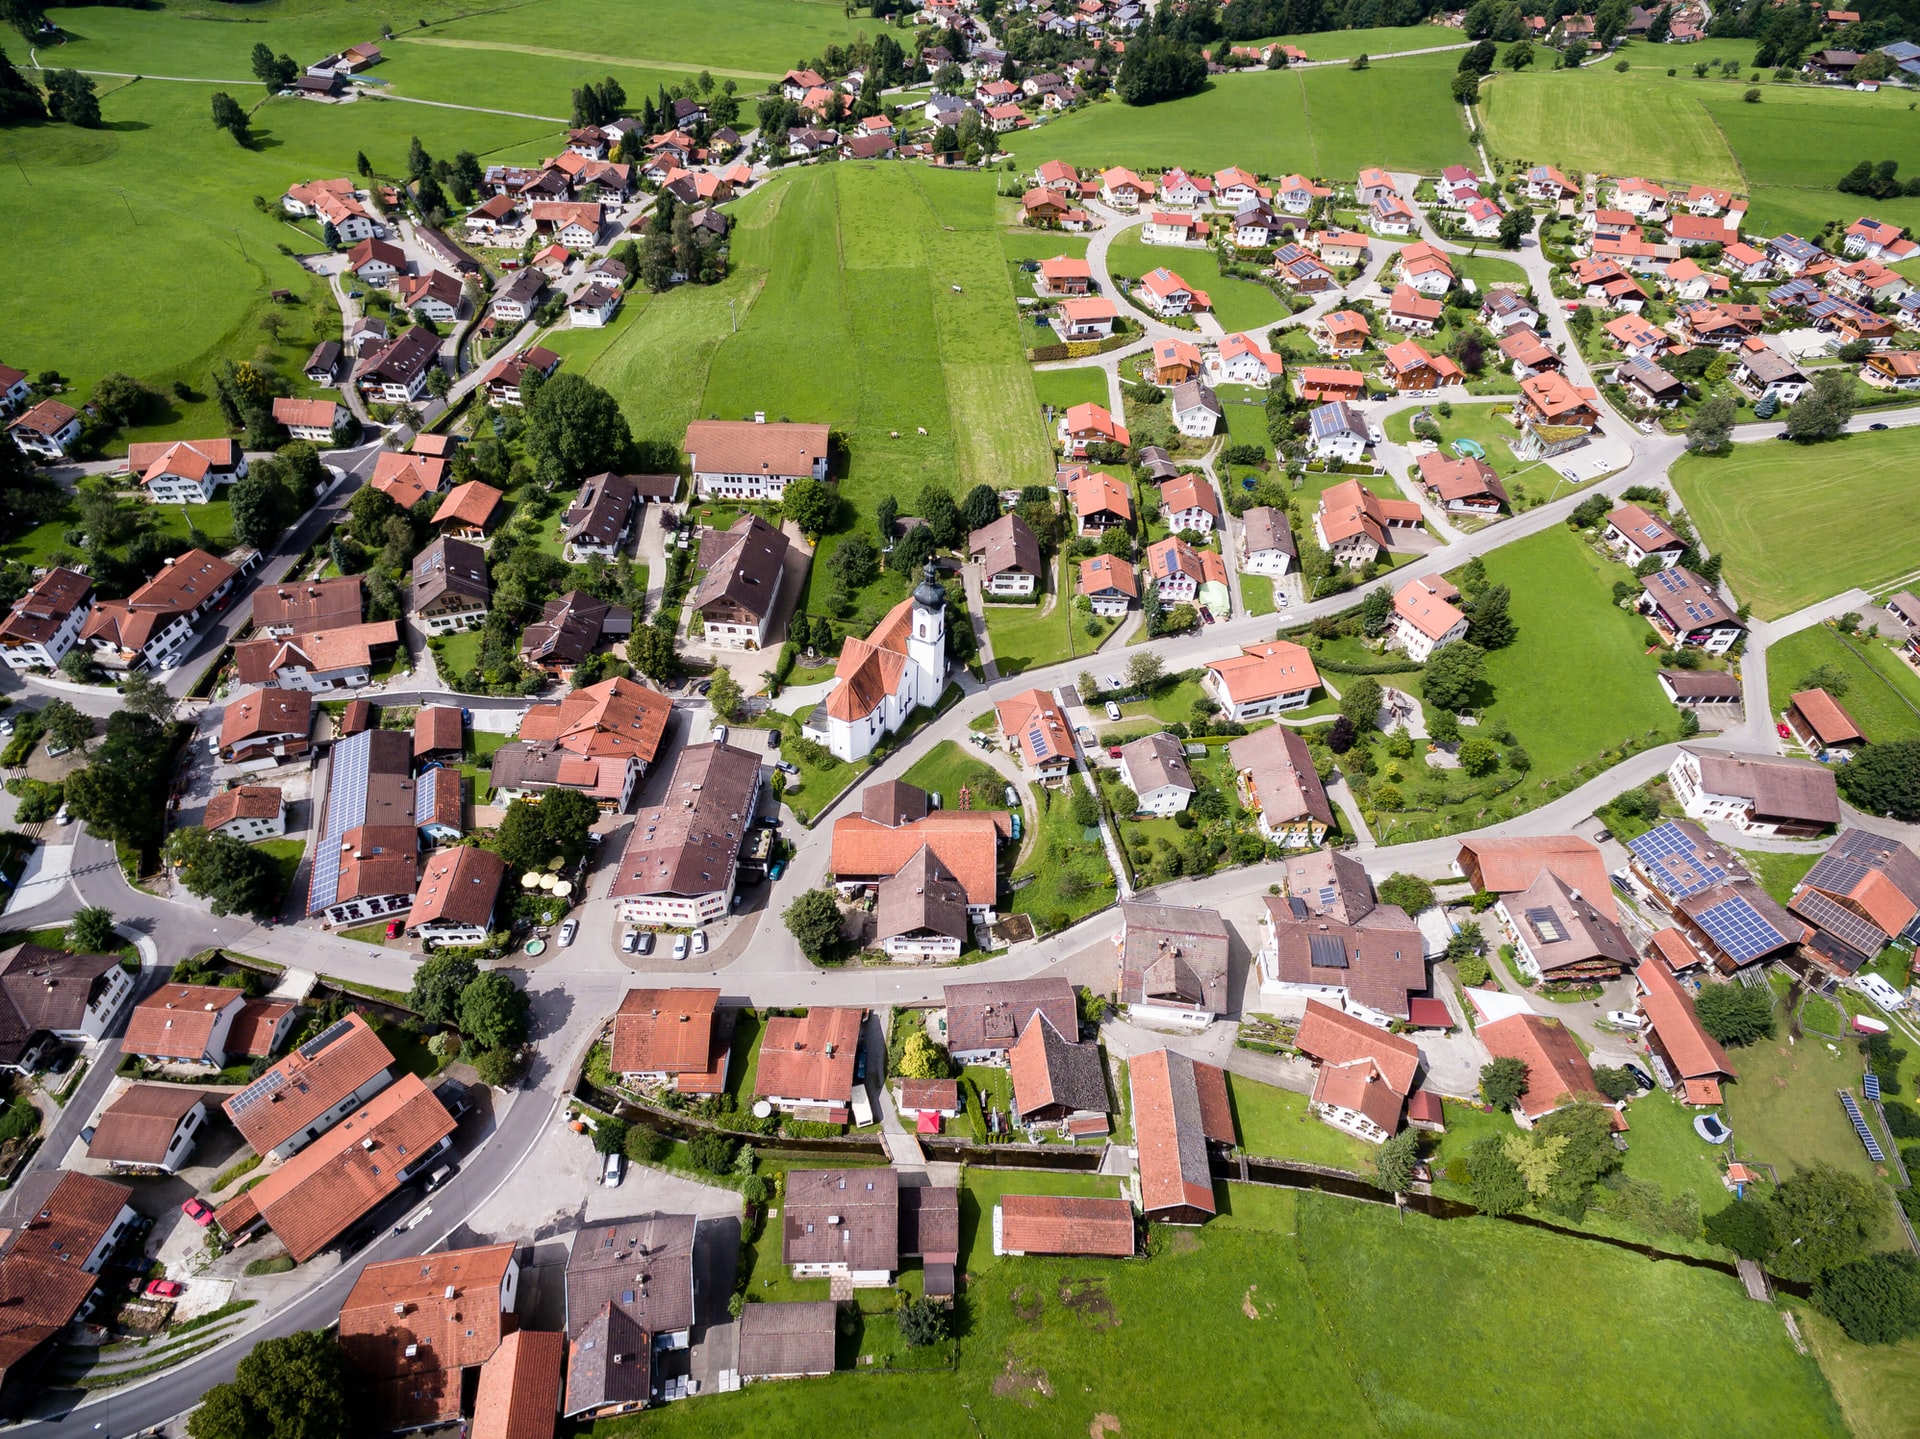 Vue aérienne d'un village de maisons aux toits en tuile entourées de champs